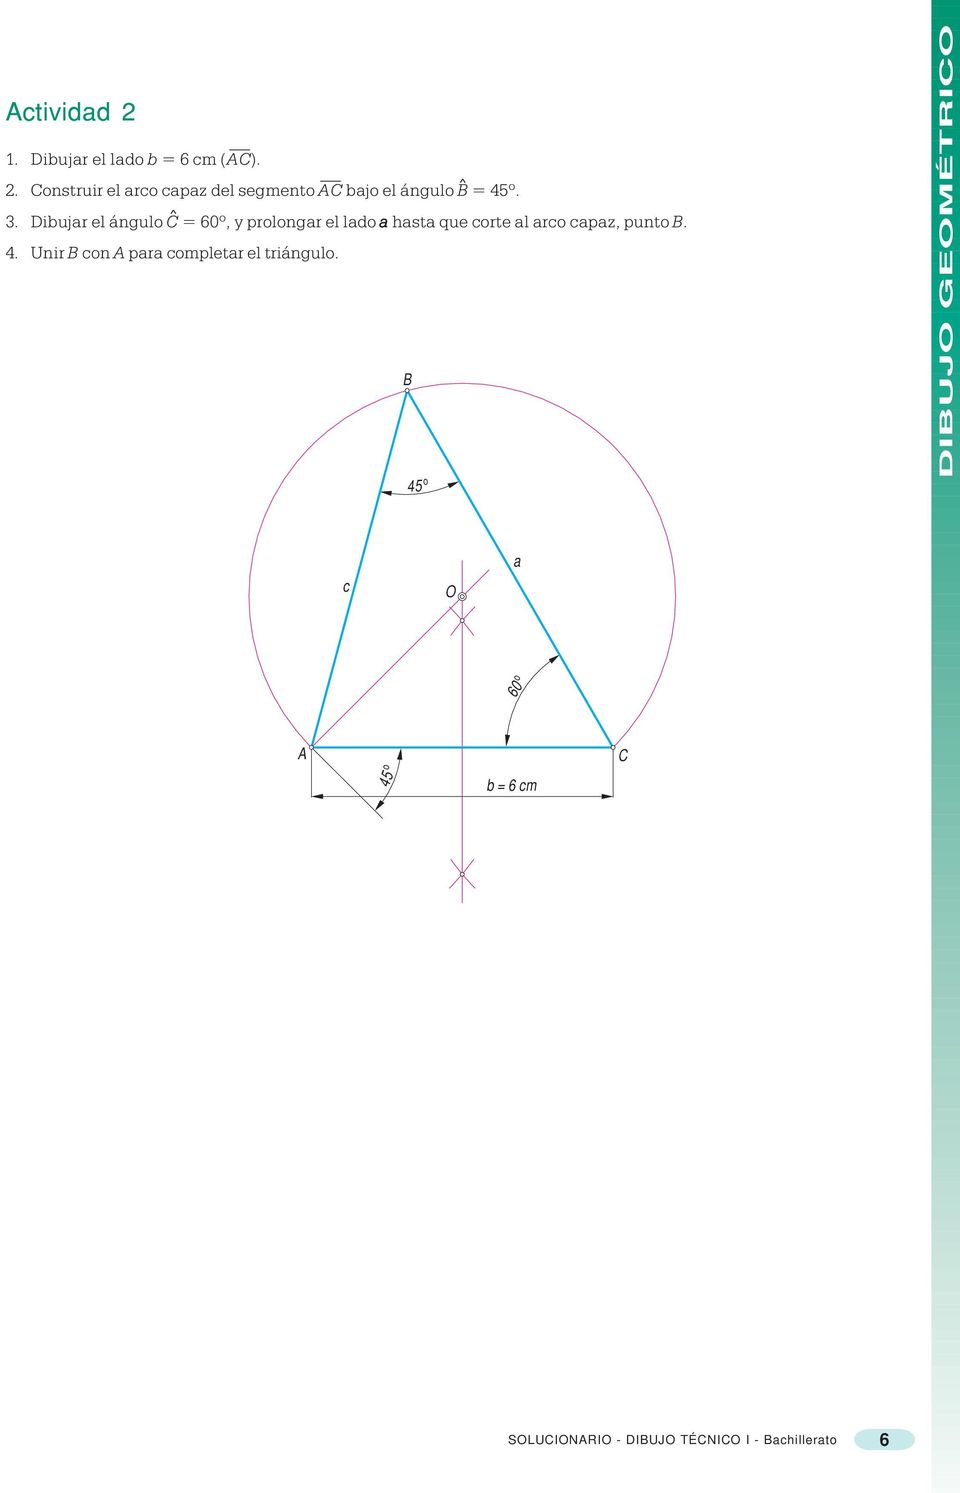 Dibuja el ángulo C = 60º, y polonga el lado a hasta que cote al aco capaz, punto